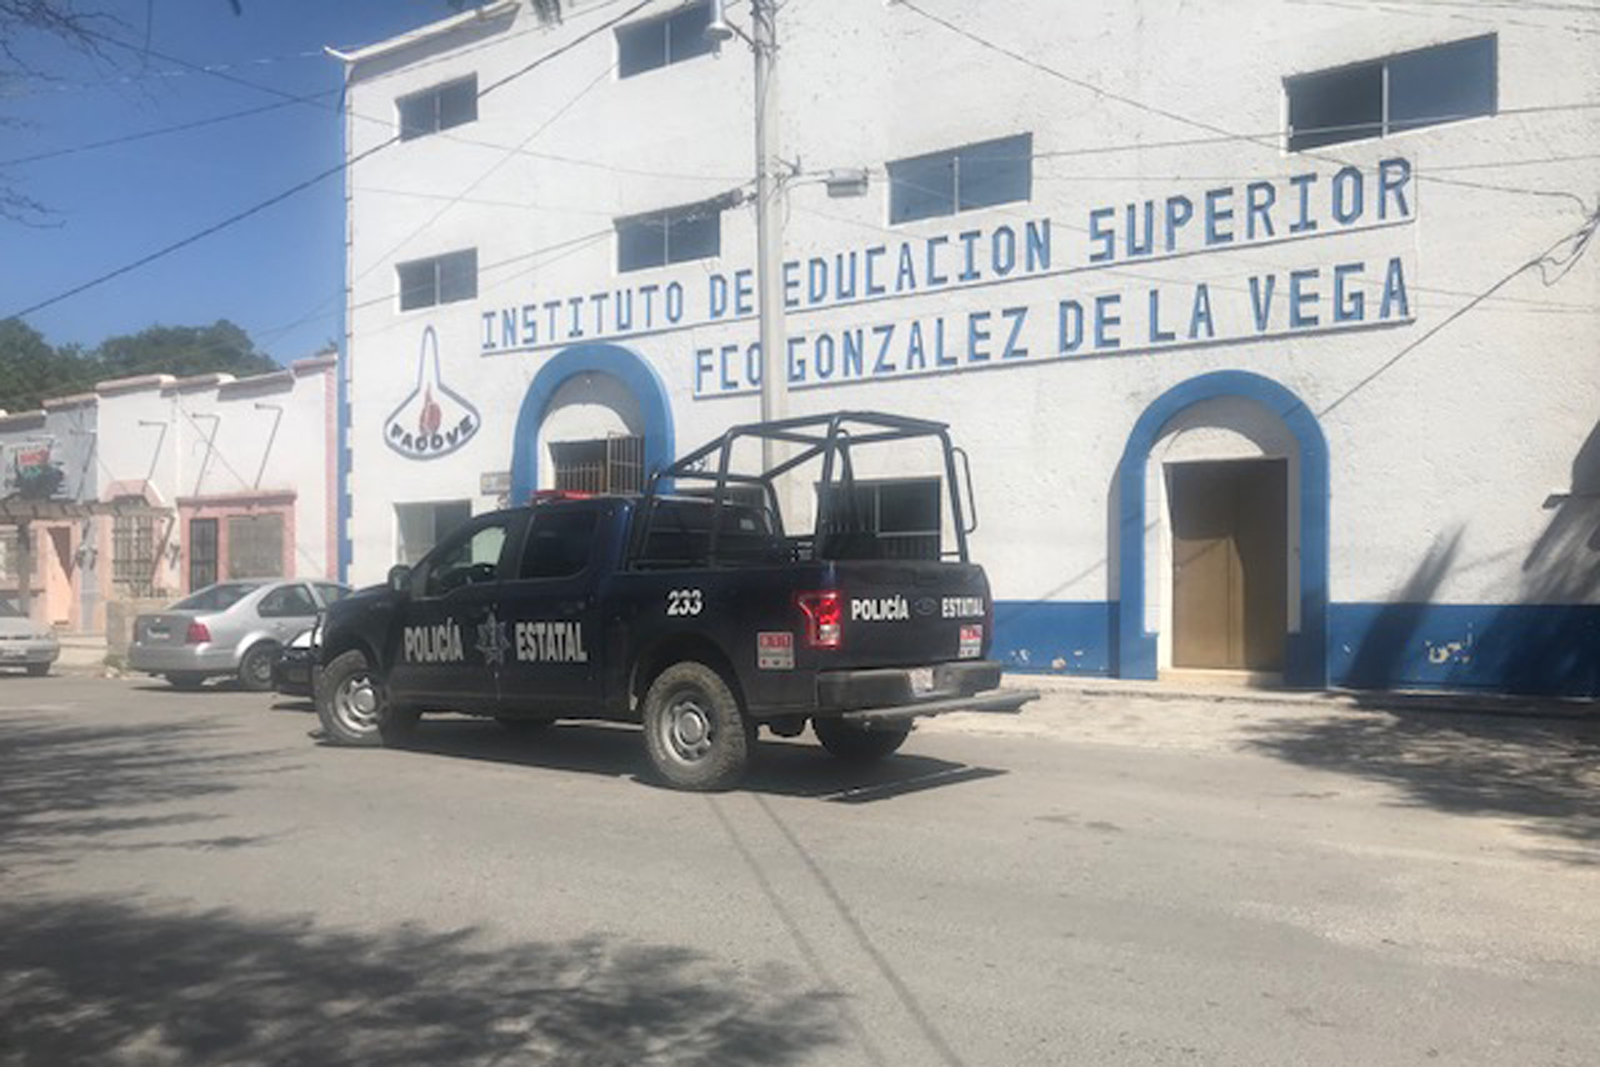 Aproximadamente a las 12:30 horas se reportó al Sistema de Emergencia 911 el robo en el Centro de Educación Francisco González de la Vega, ubicado en la zona Centro de Gómez Palacio.